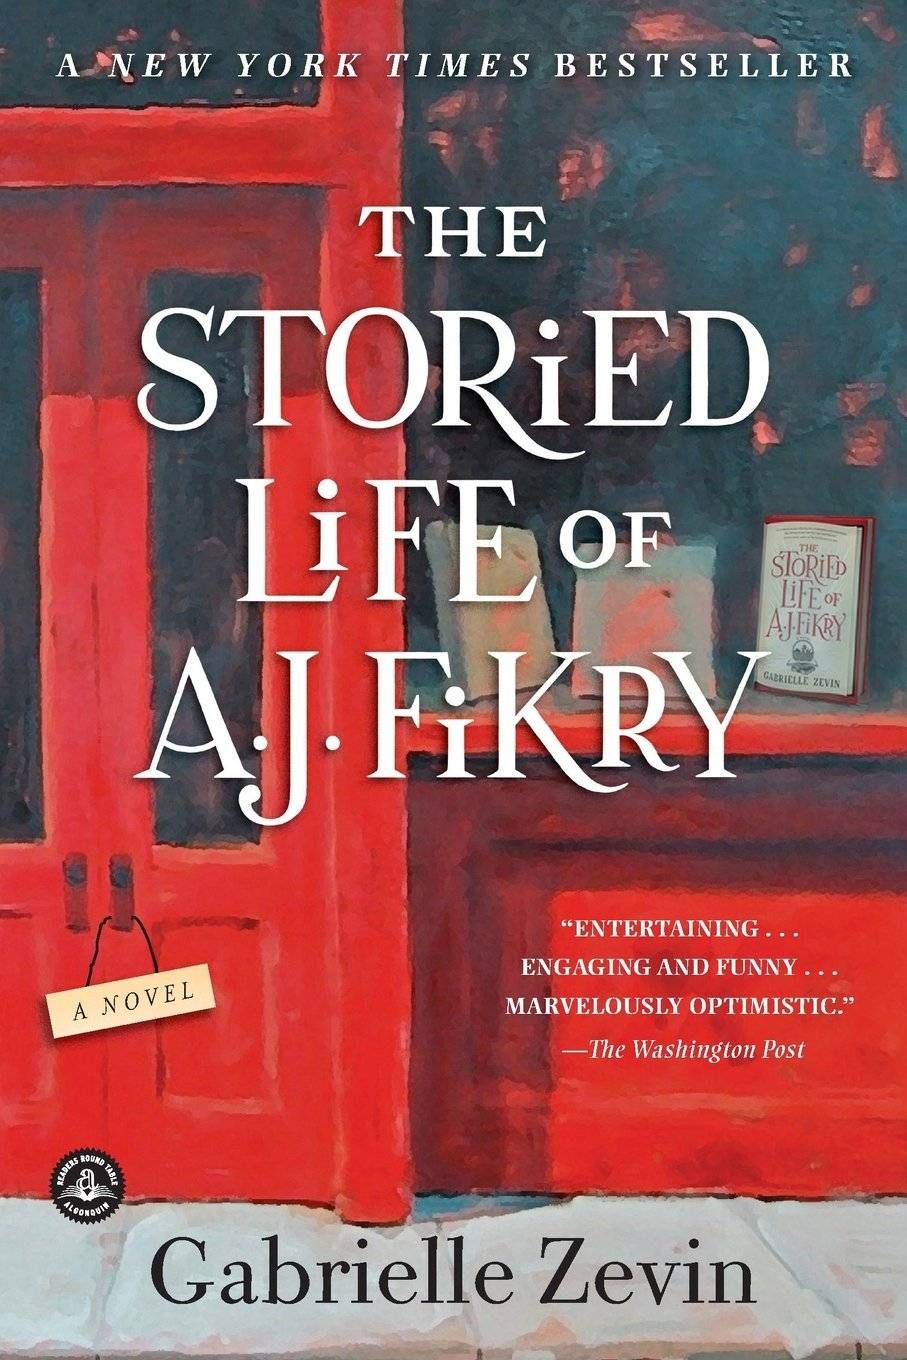 image de couverture de The Storied Life of AJ Fikry de Gabrielle Zevin, illustration de la façade d'une librairie, peinte en rouge, avec une grande vitrine et une porte